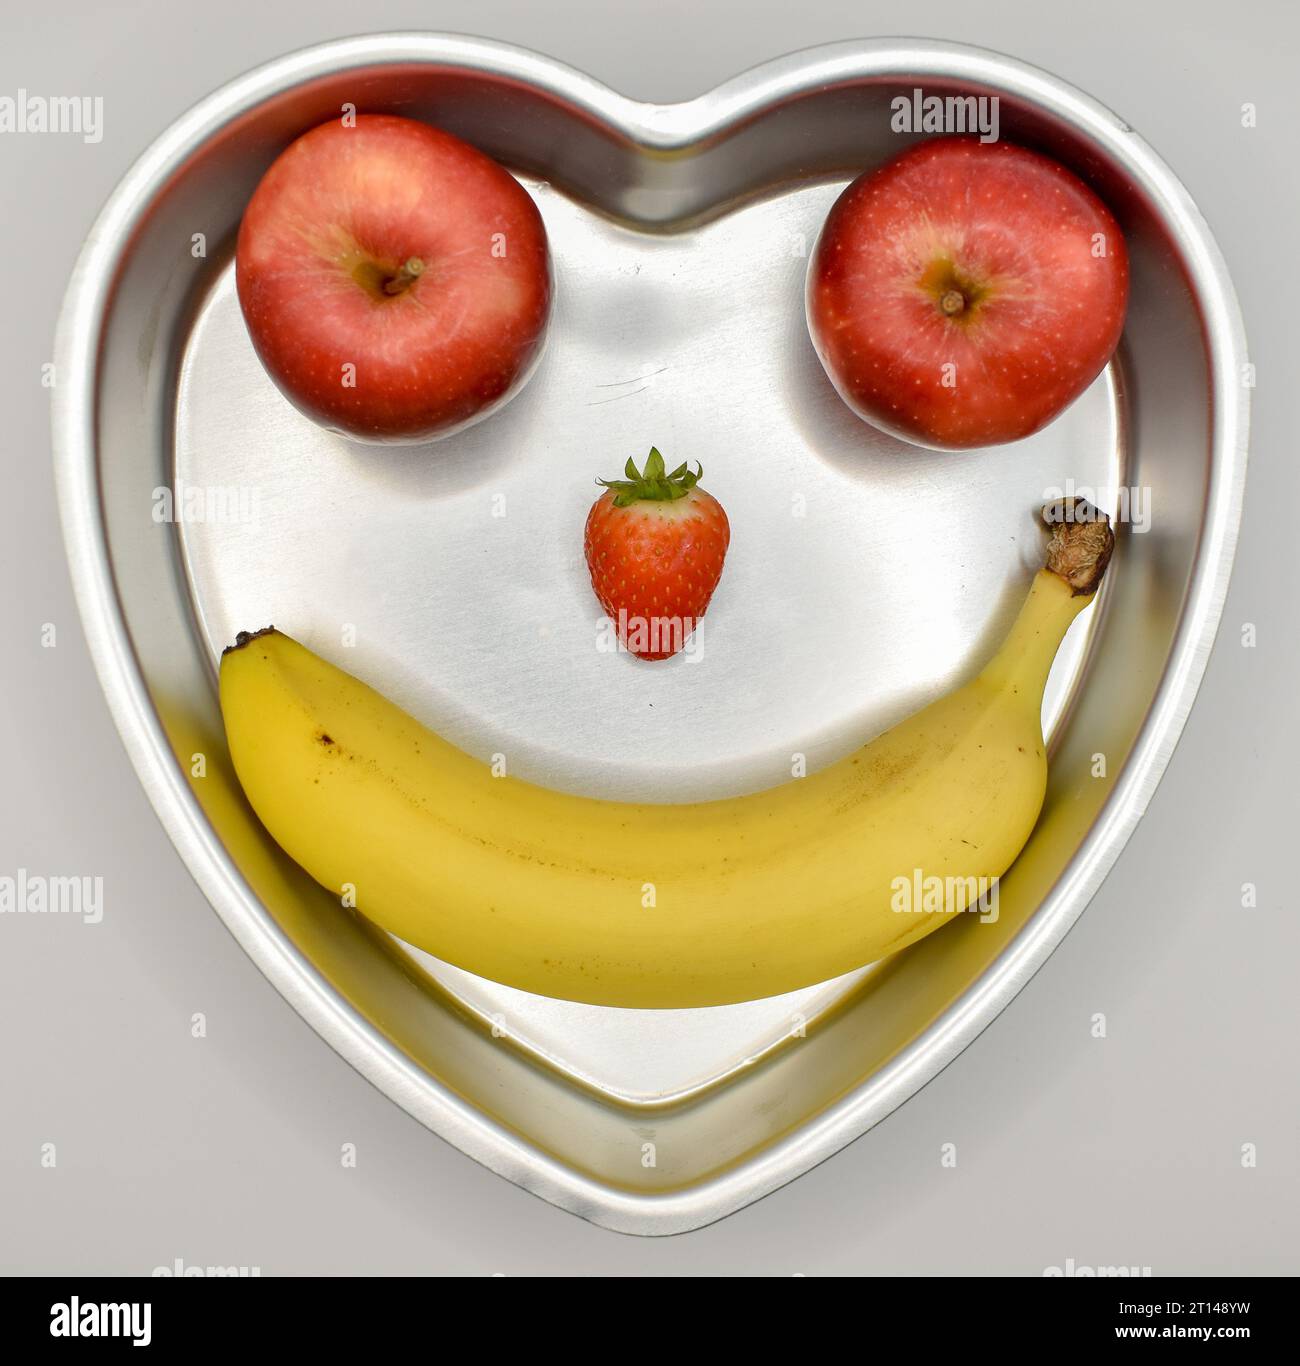 Essen Sie gesund, eine herzförmige Dose mit zwei Äpfeln, einer Erdbeere und einer Banane, die ein lächelndes Gesicht bilden. Stockfoto